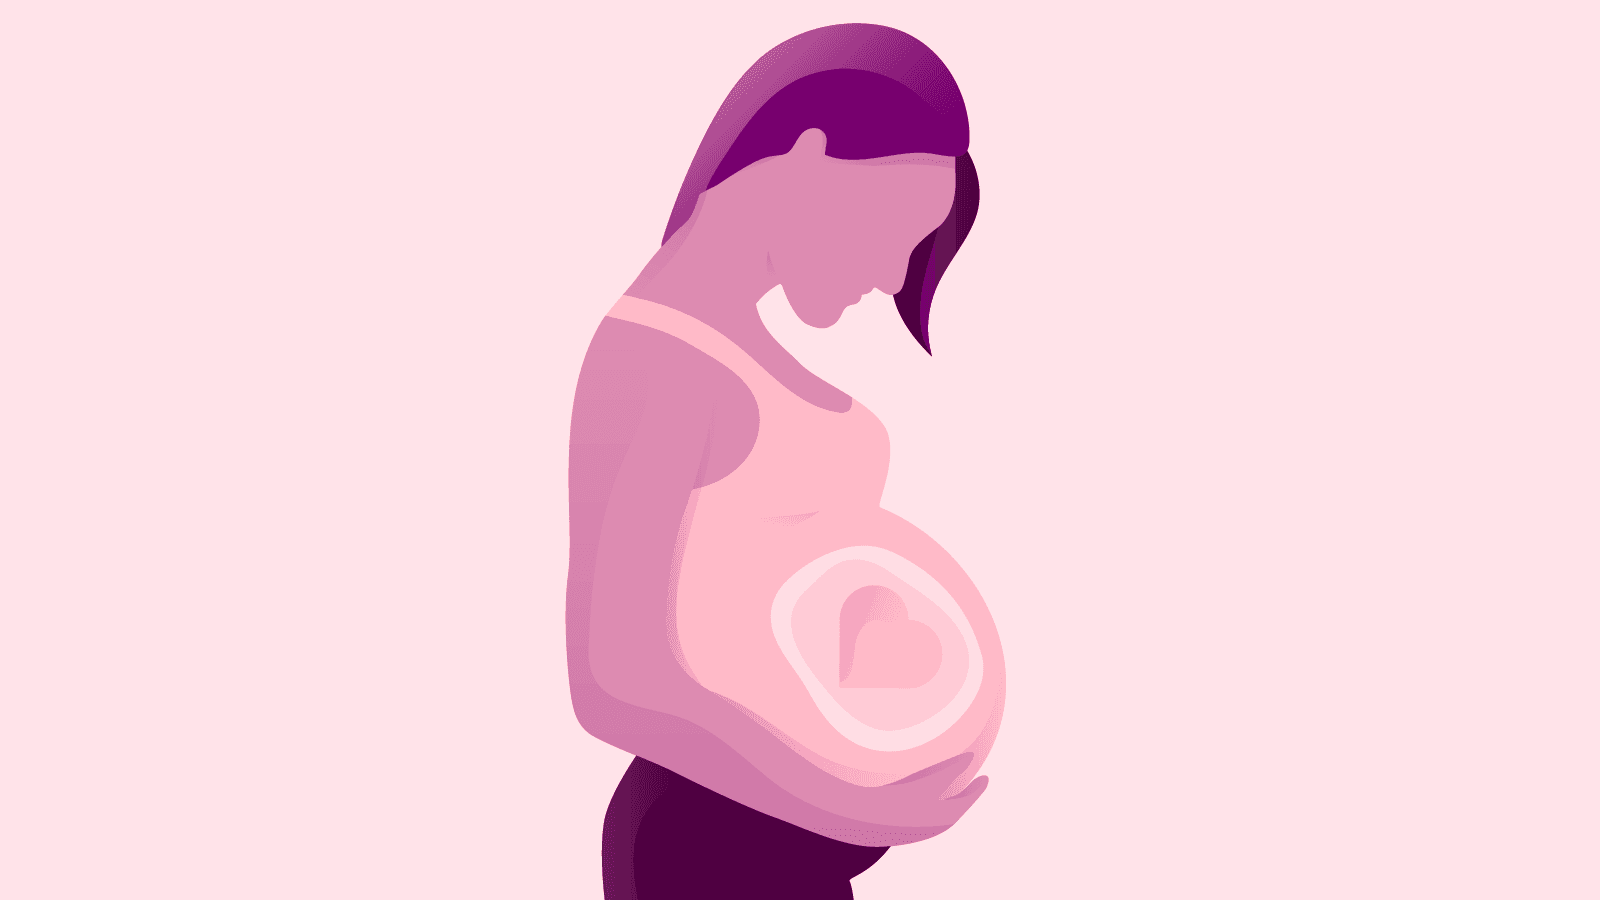 如果您正處於懷孕階段，飲食也會對您的孩子產生影響。 下文介紹了您應瞭解的有關孕期飲酒的資訊。